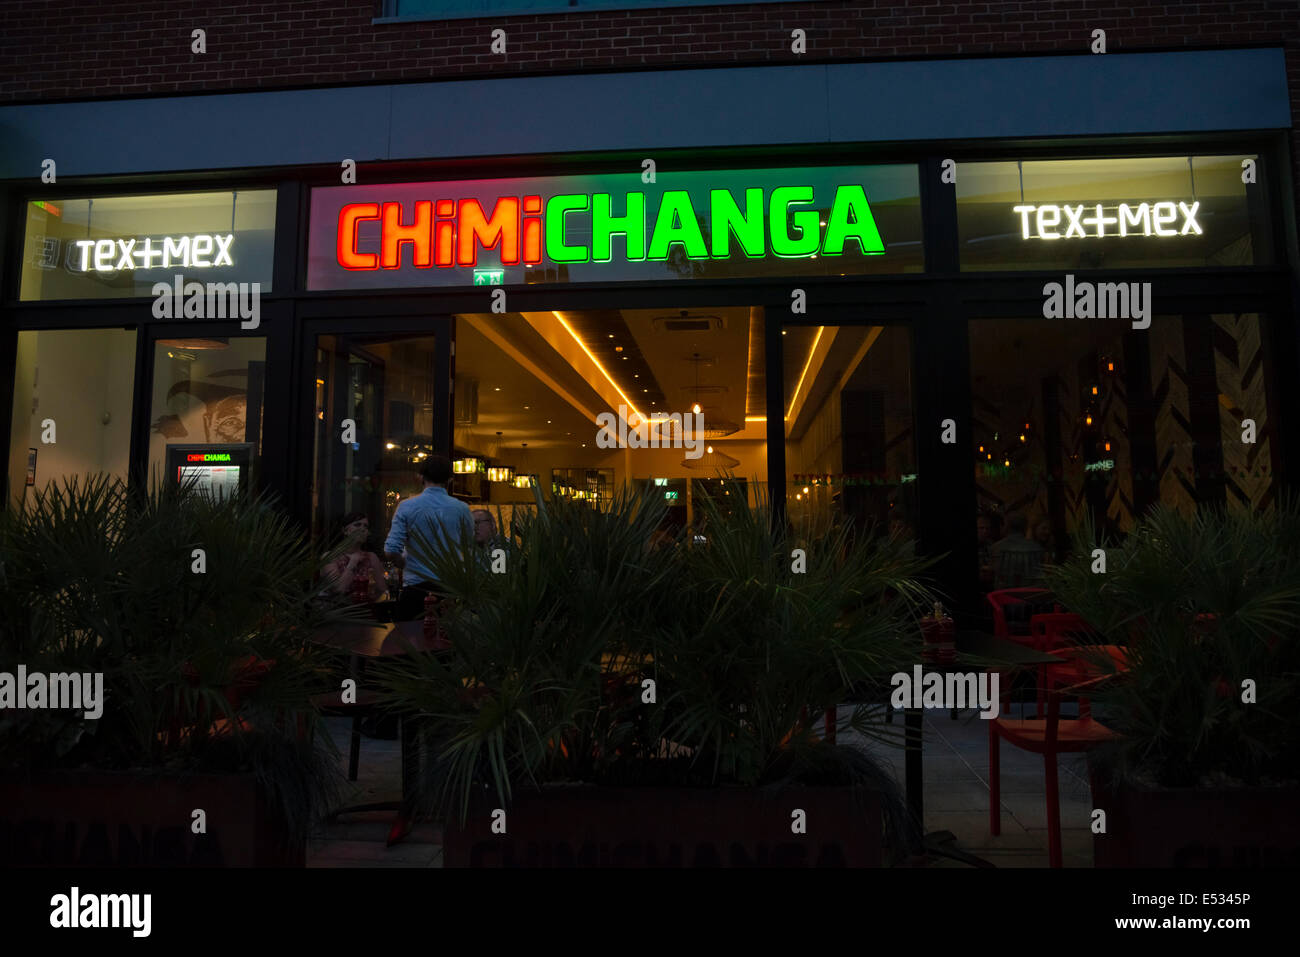 ChimiChanga restaurant at night, UK. Stock Photo